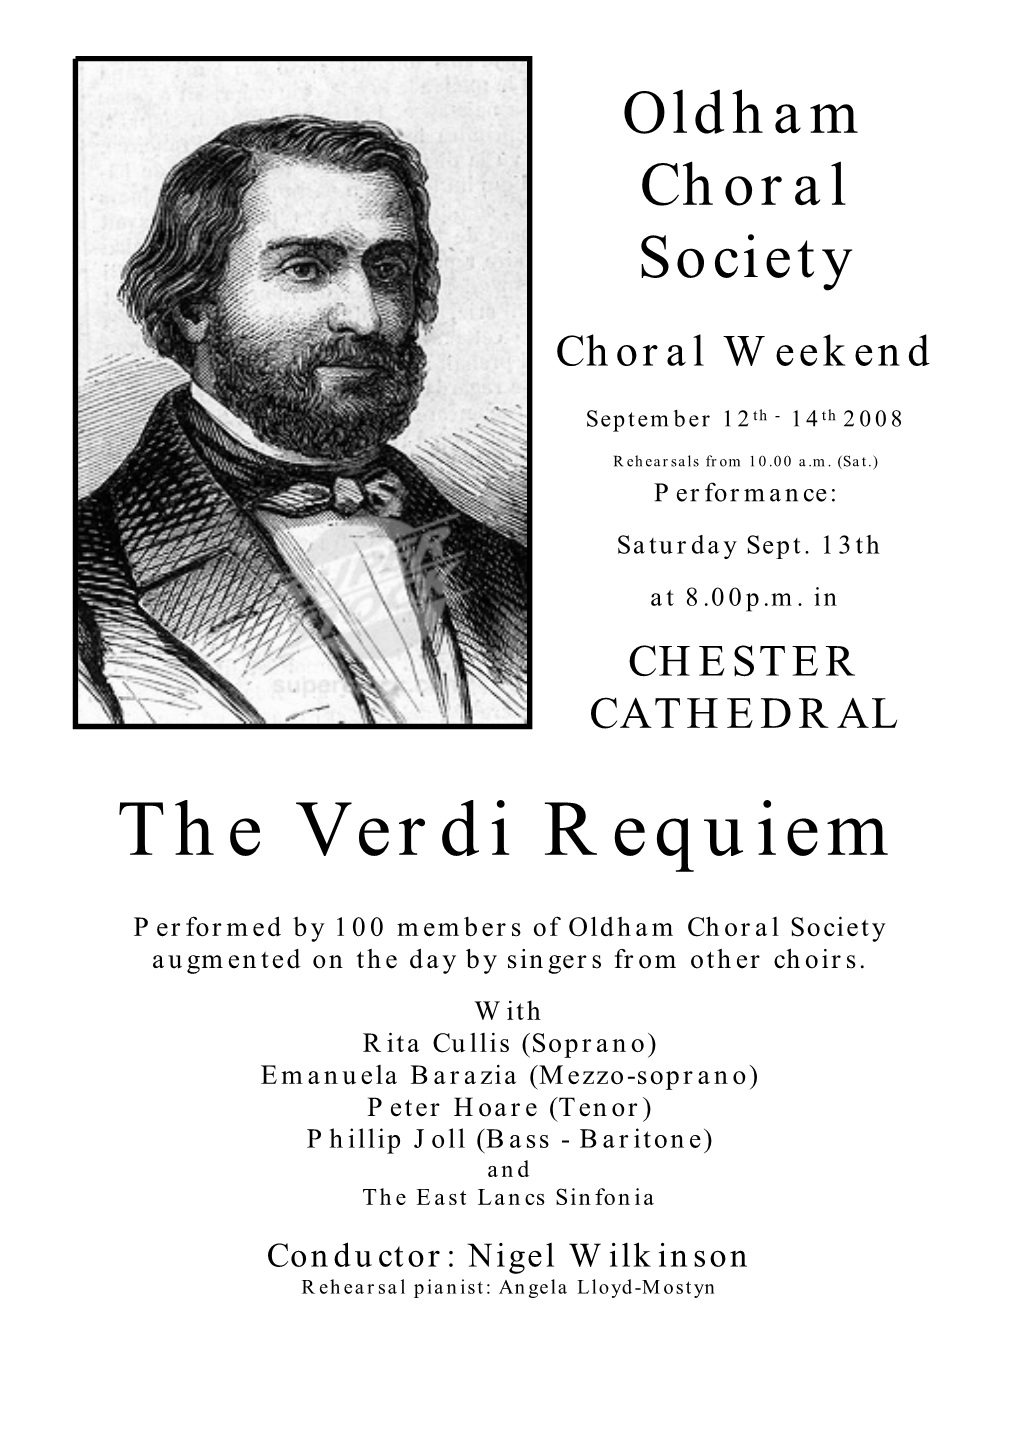 The Verdi Requiem